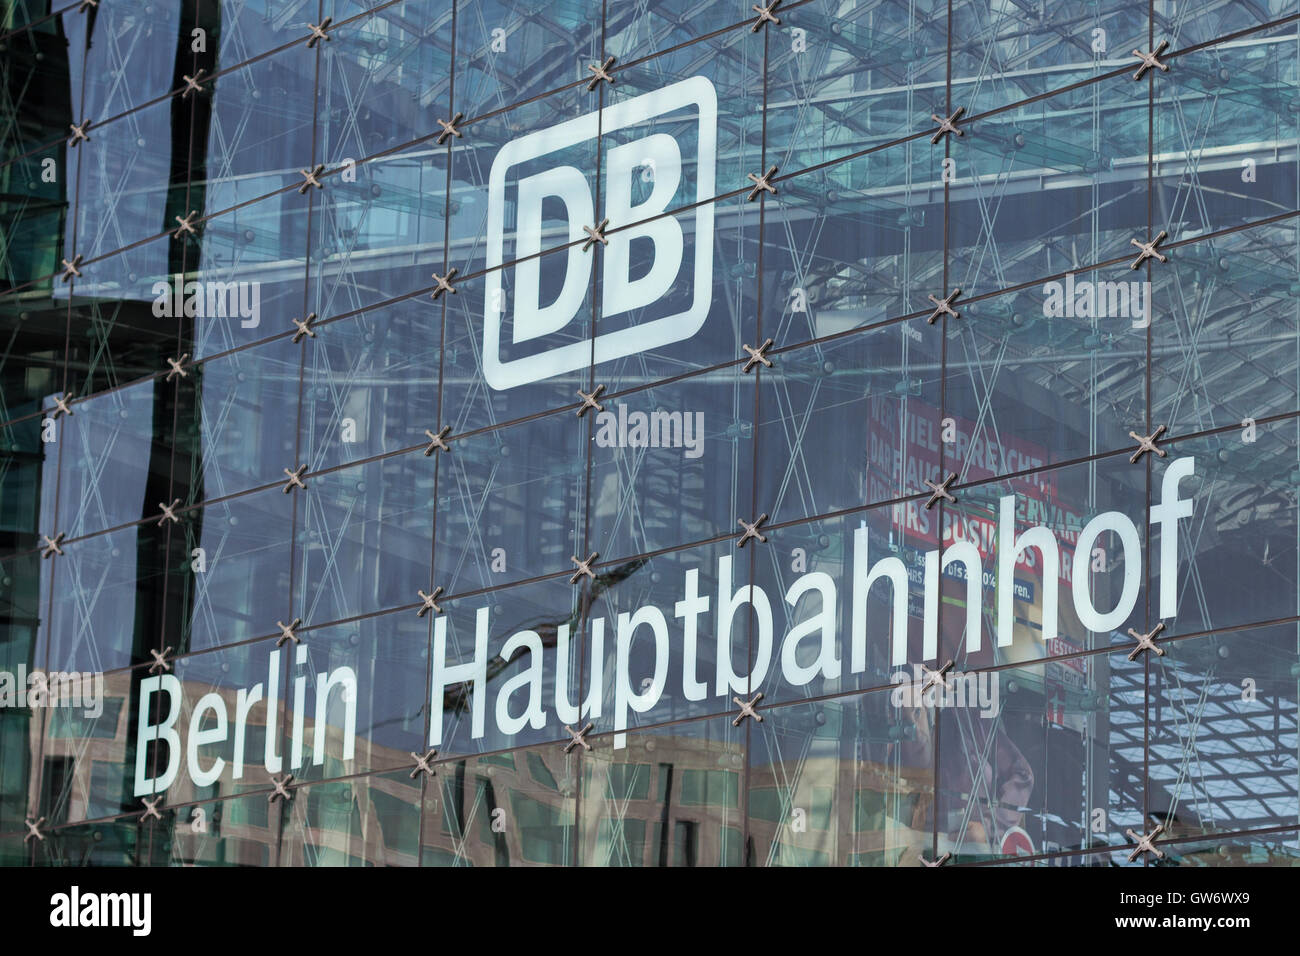 Logotipo ferroviaria alemana 'DB' (Deutsche Bahn) sobre la fachada de vidrio de la estación de tren principal de Berlín (Berlin Hauptbahnhof) Foto de stock